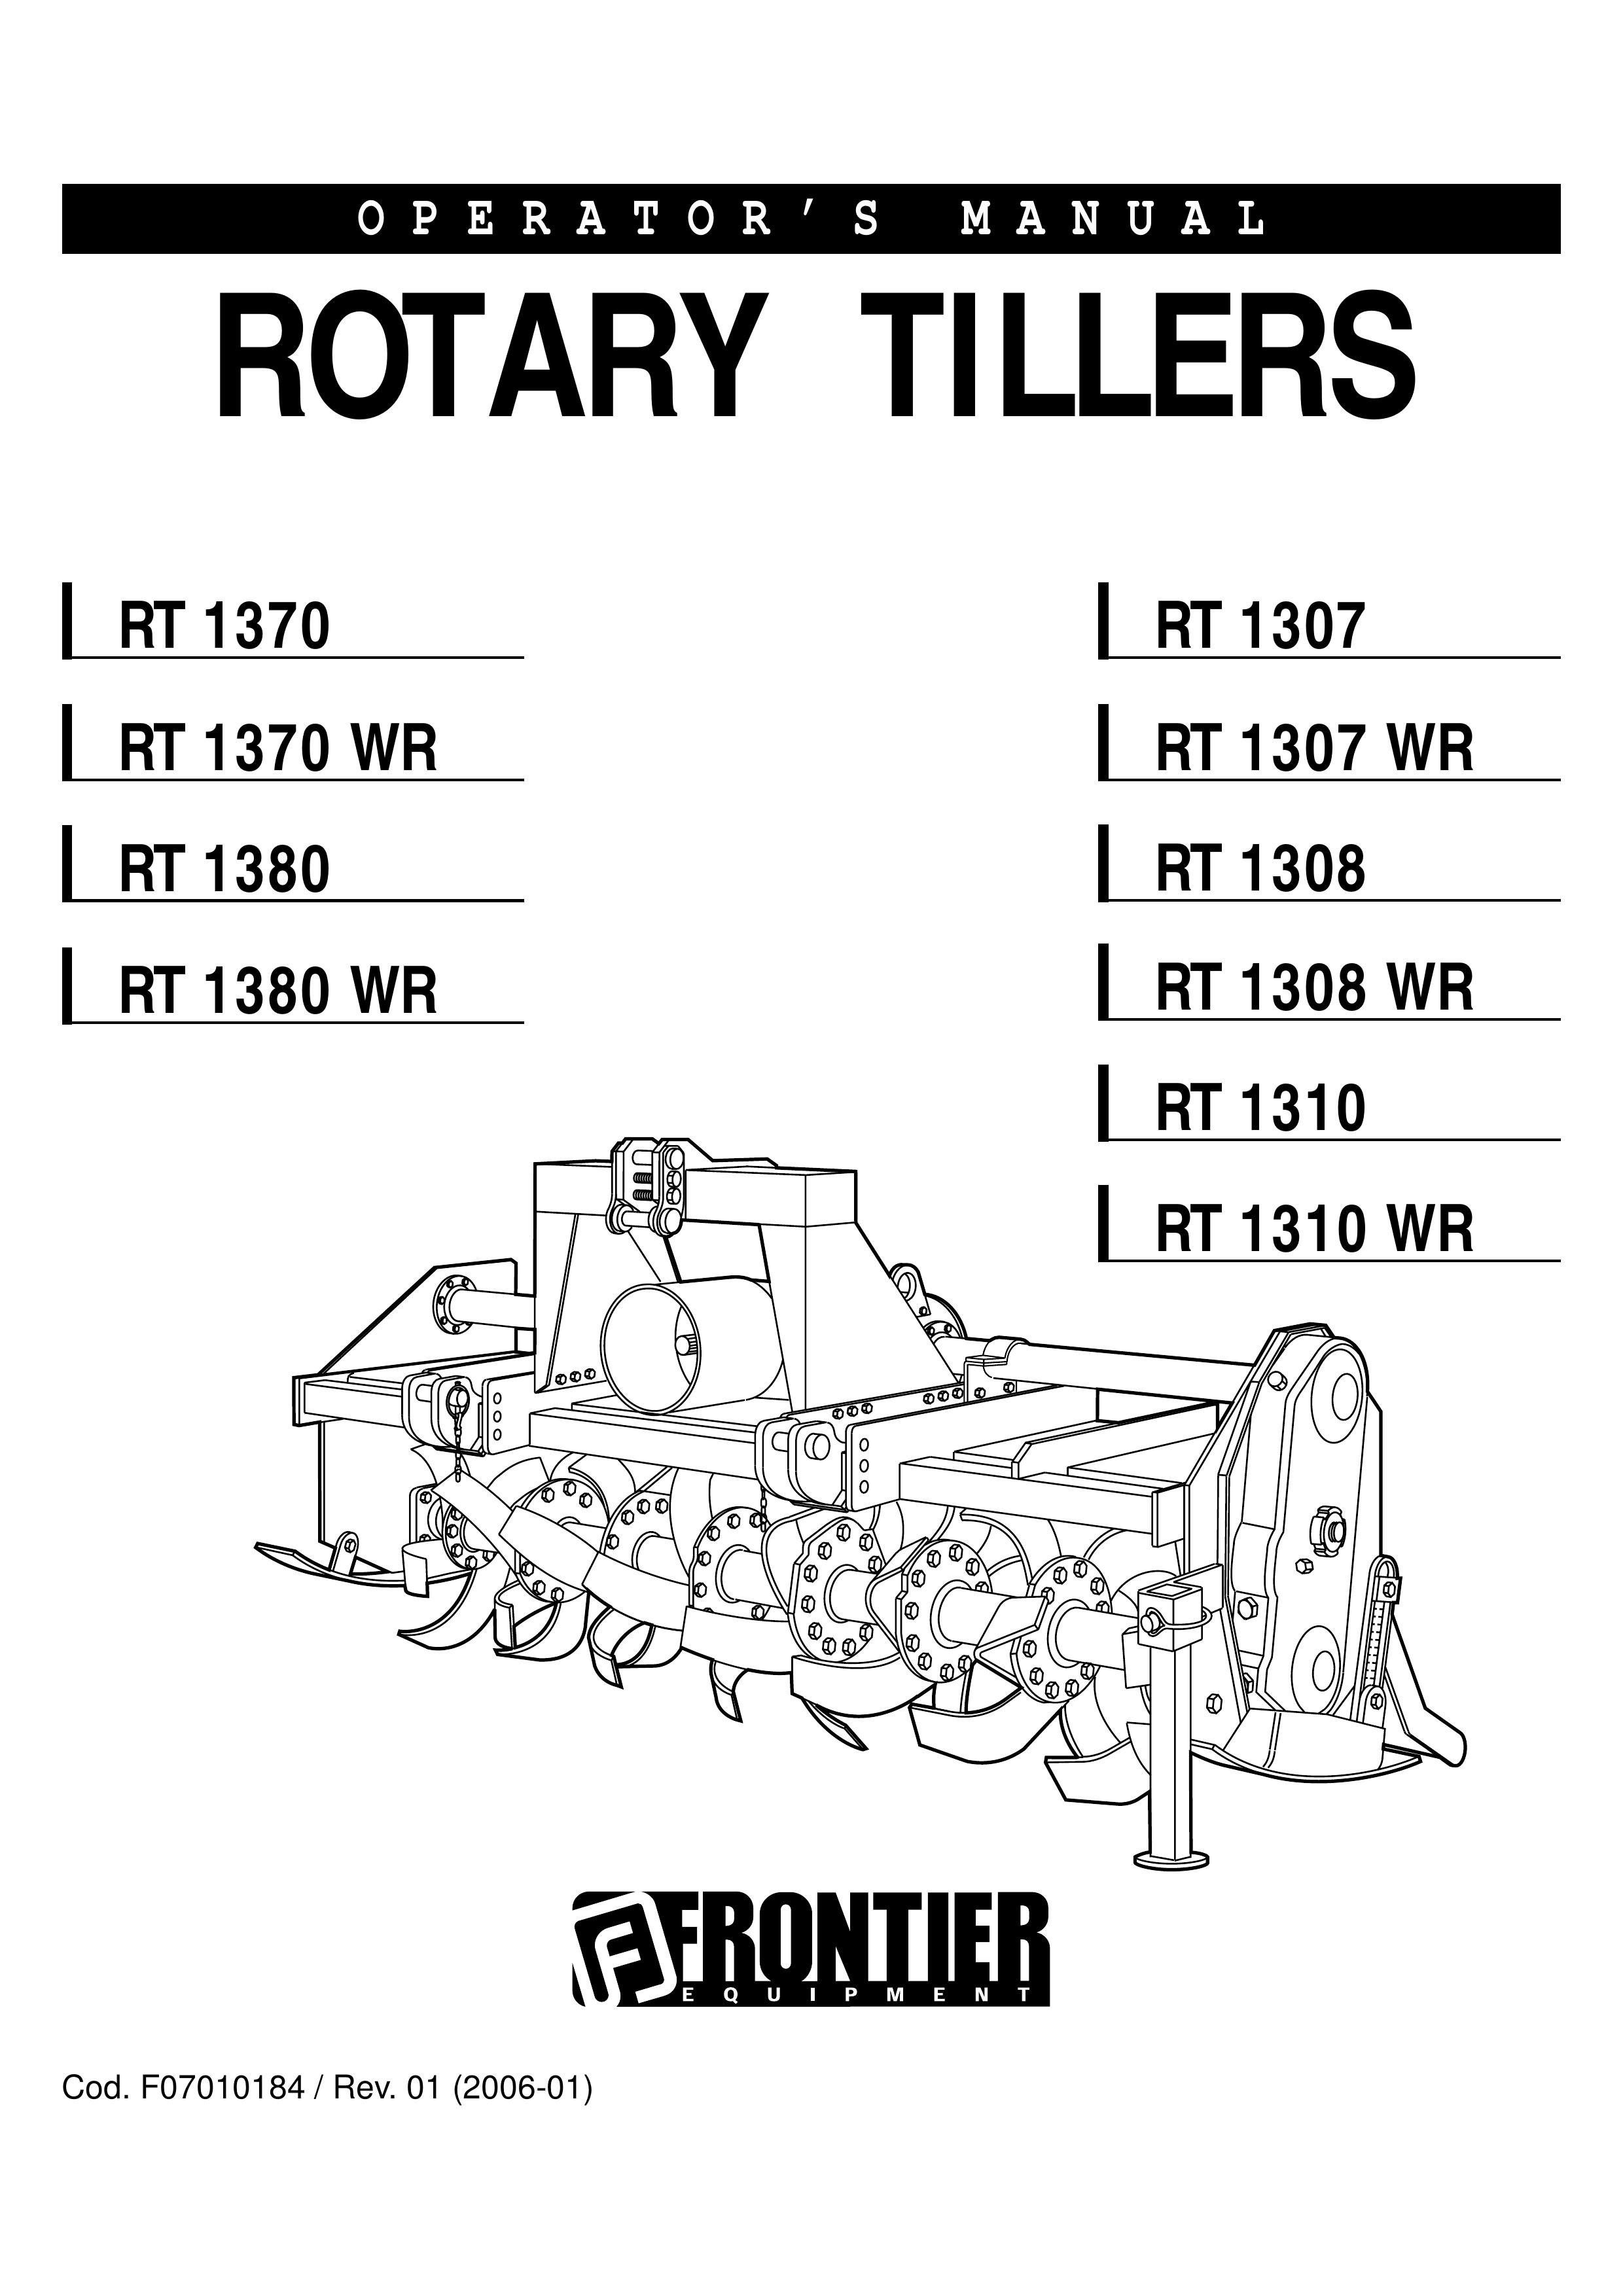 John Deere RT 1310 Tiller User Manual